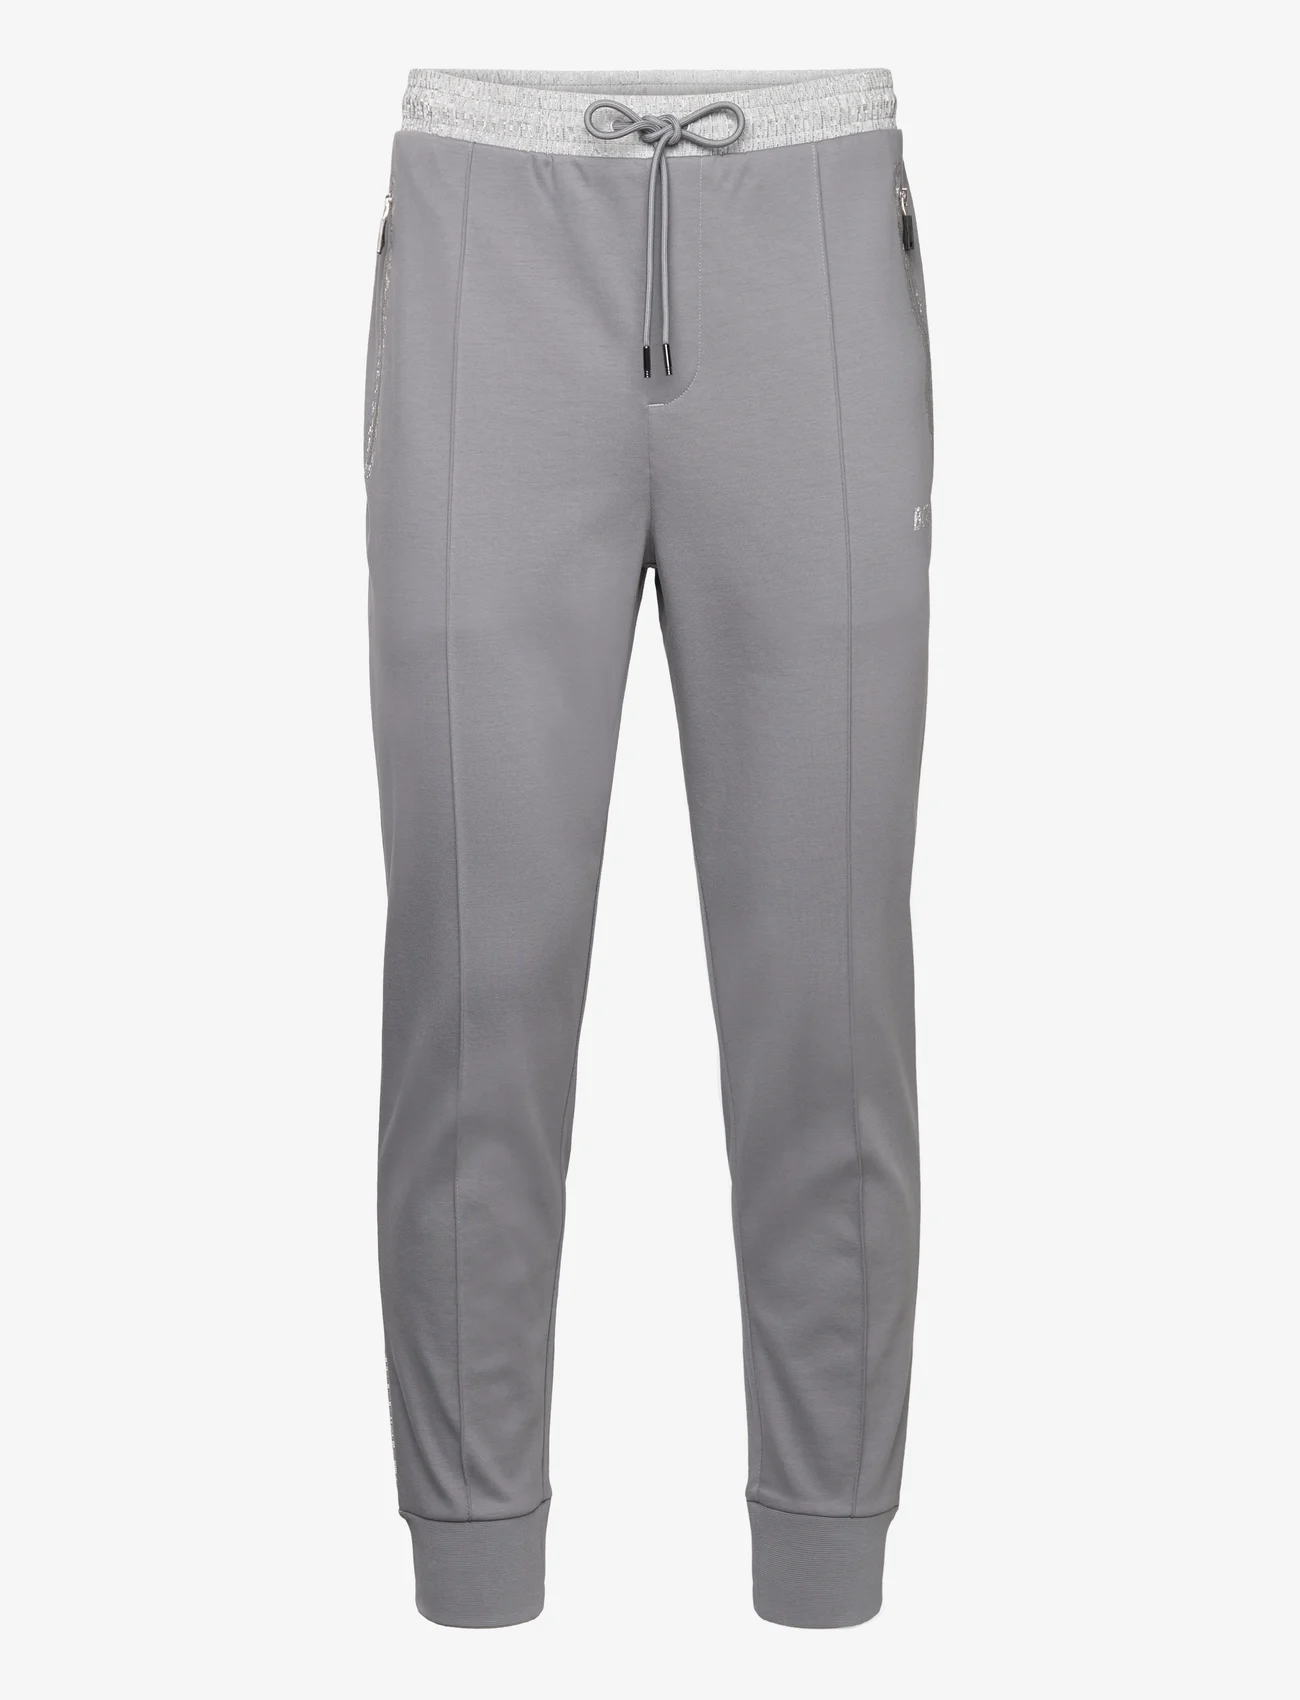 BOSS - Hadiko Mirror - sweatpants - medium grey - 0